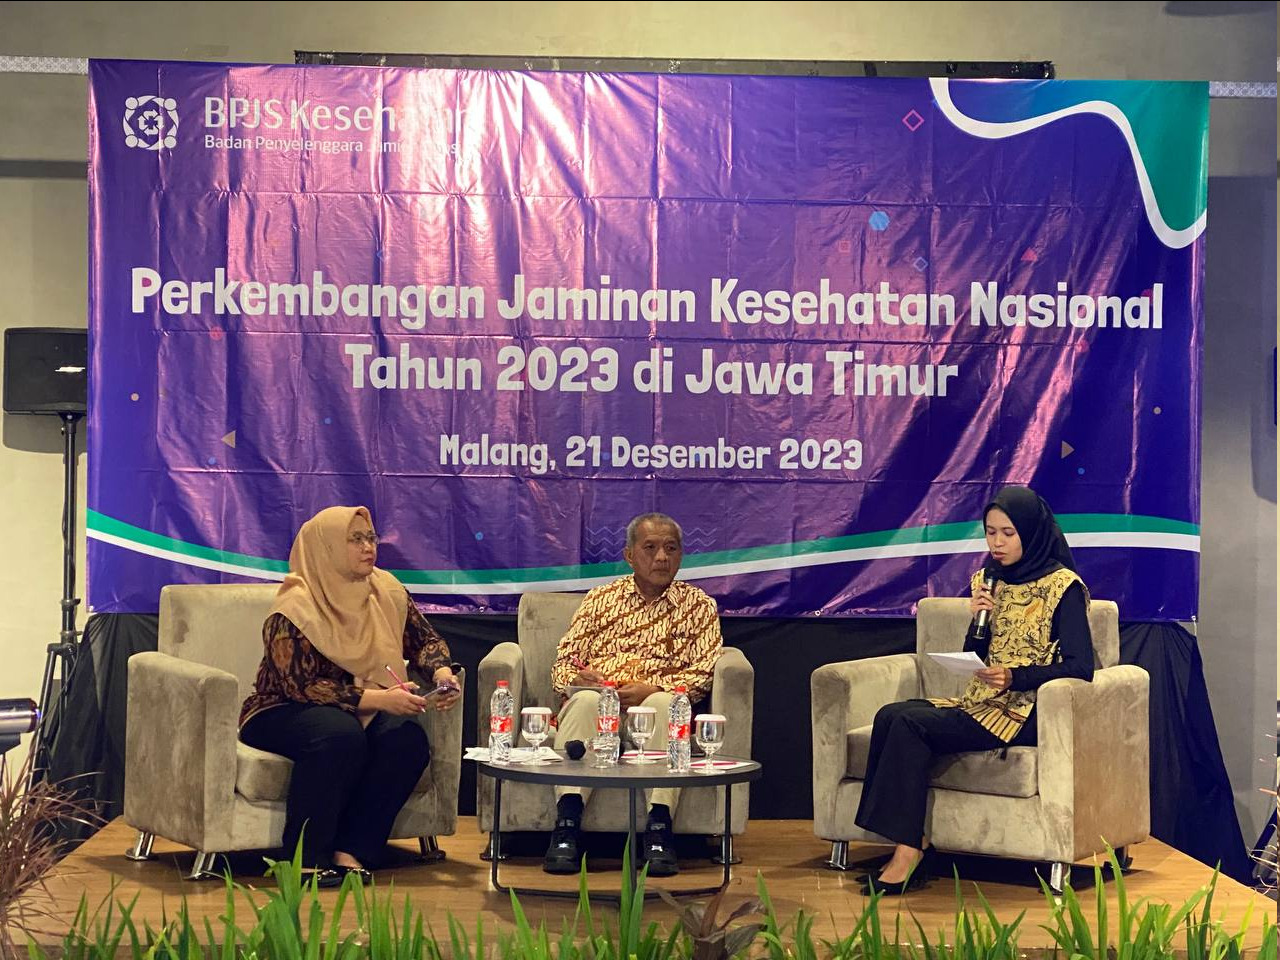 Jamin 91,36 % Penduduk Jawa Timur, BPJS Kesehatan Tetap Fokus Pada Inovasi Layanan Kepesertaan